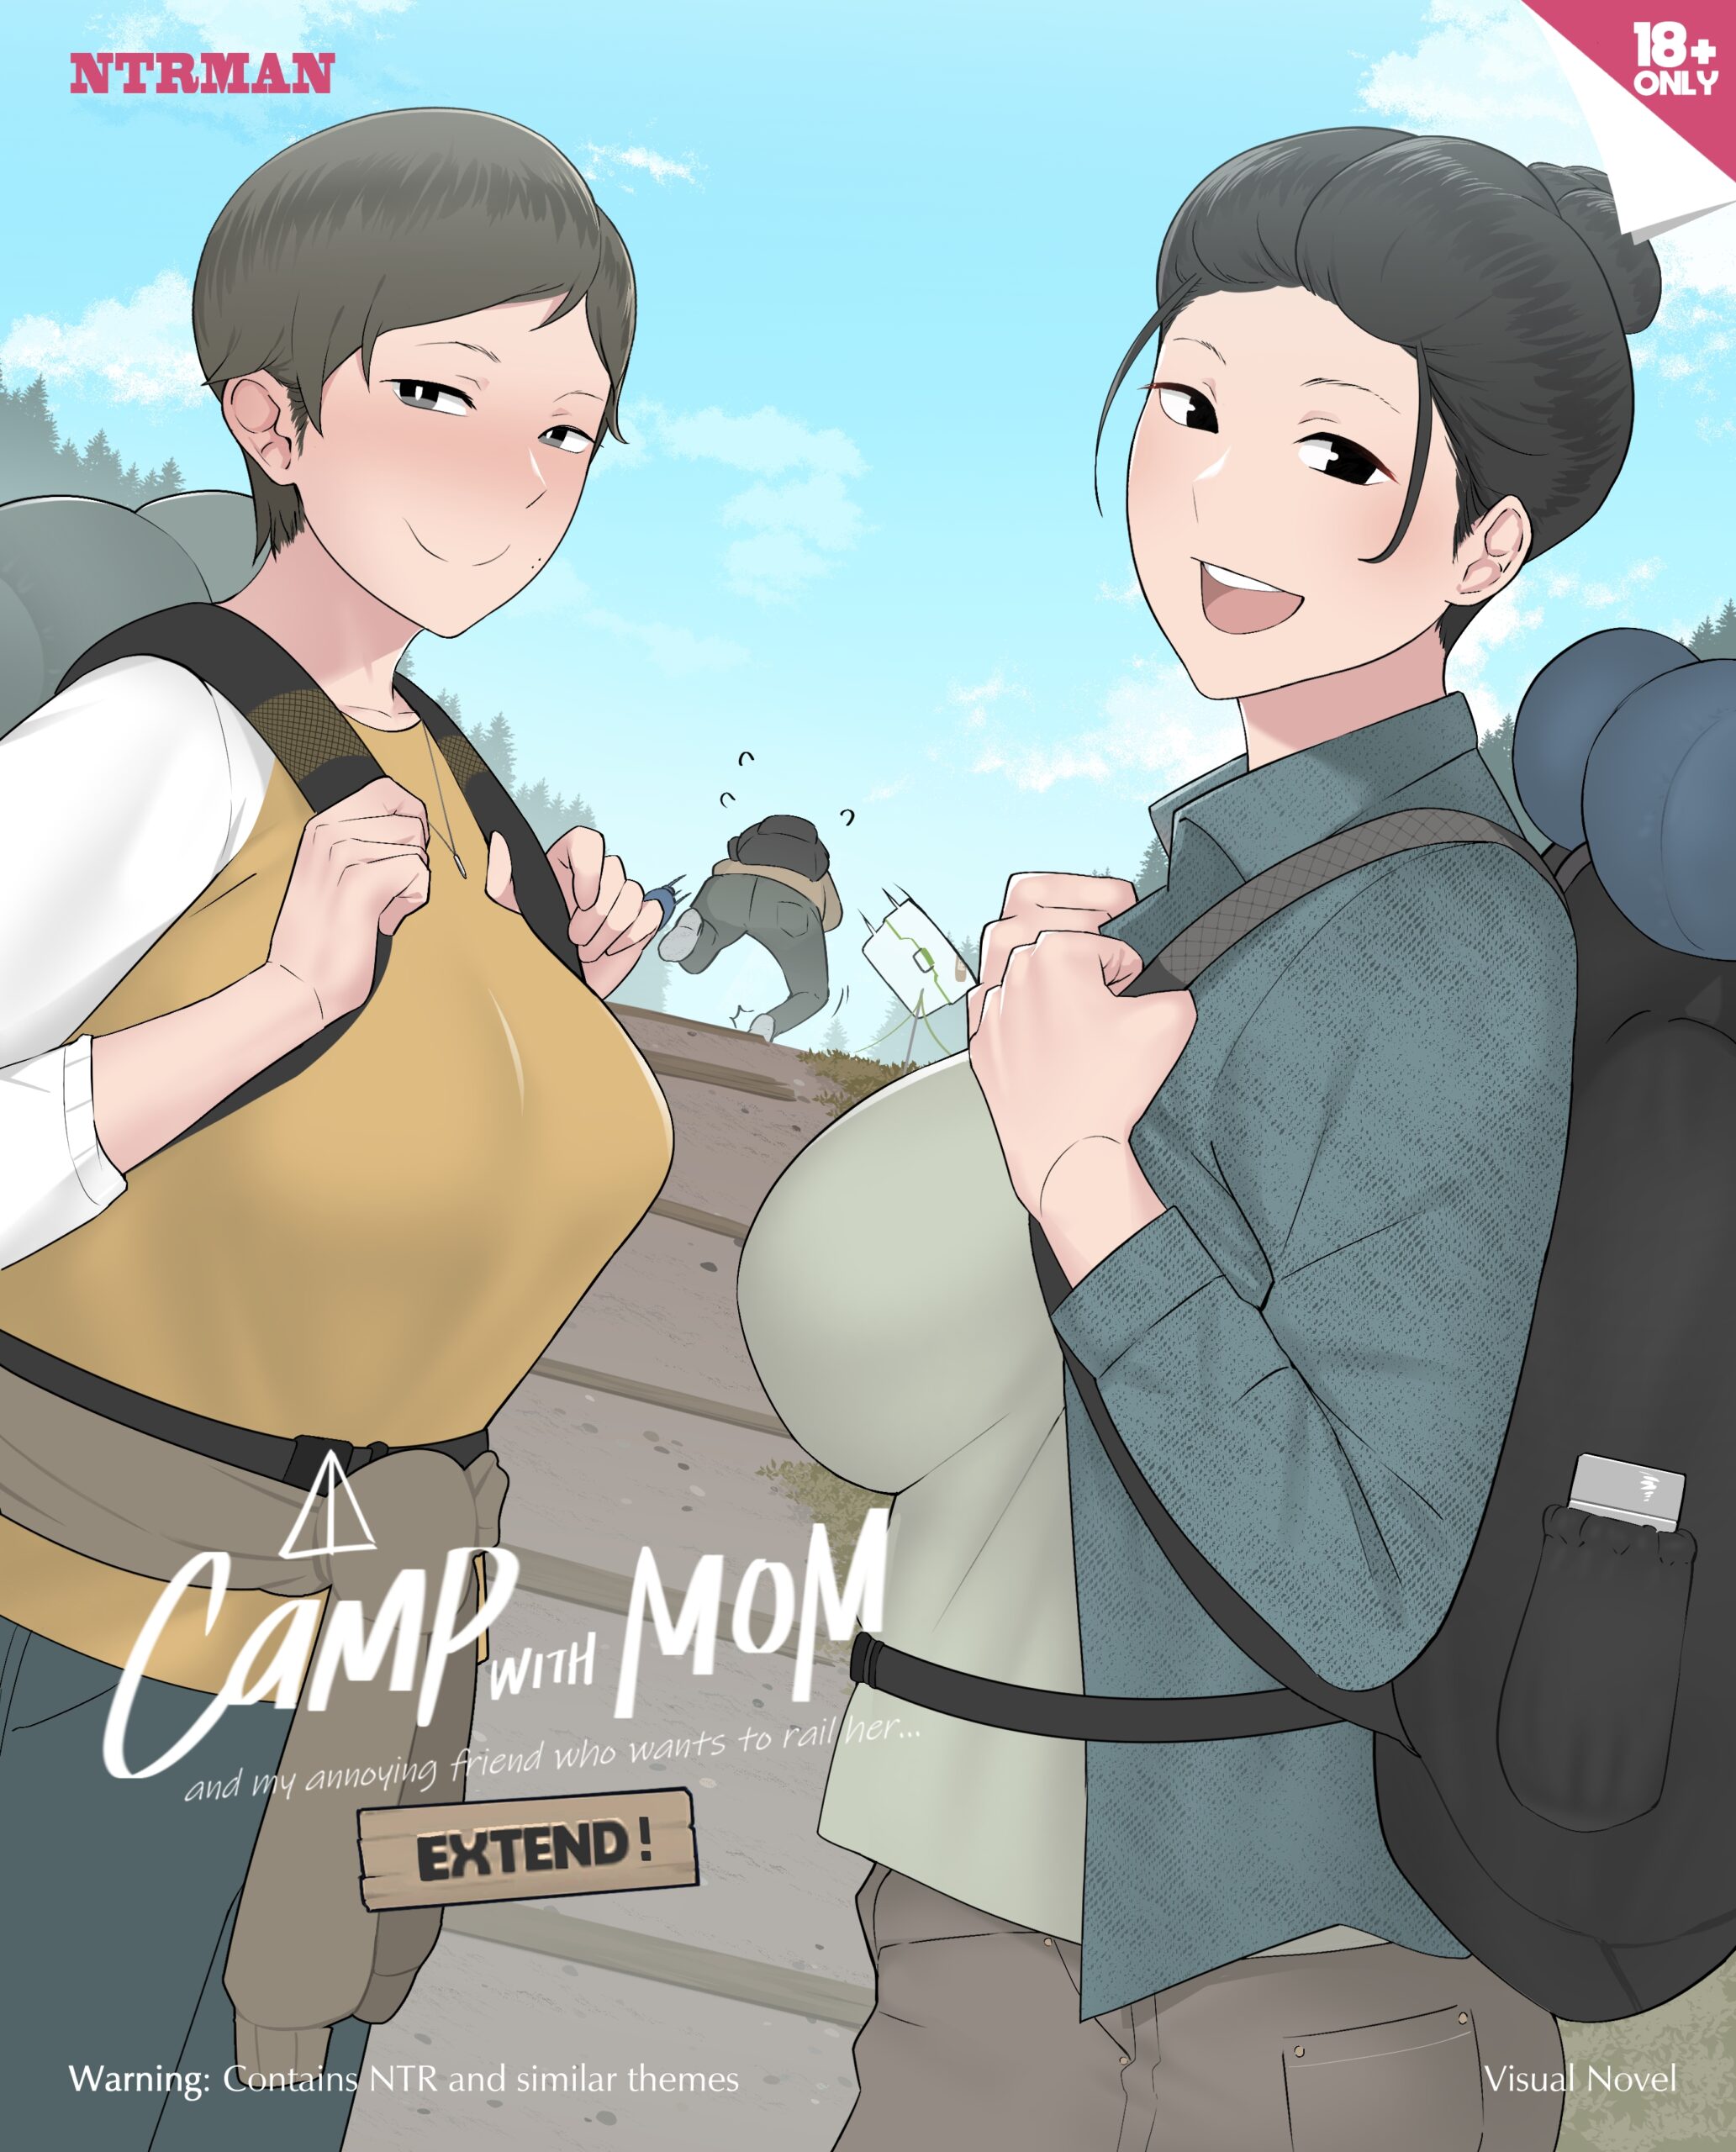 Camp with mom ntrman